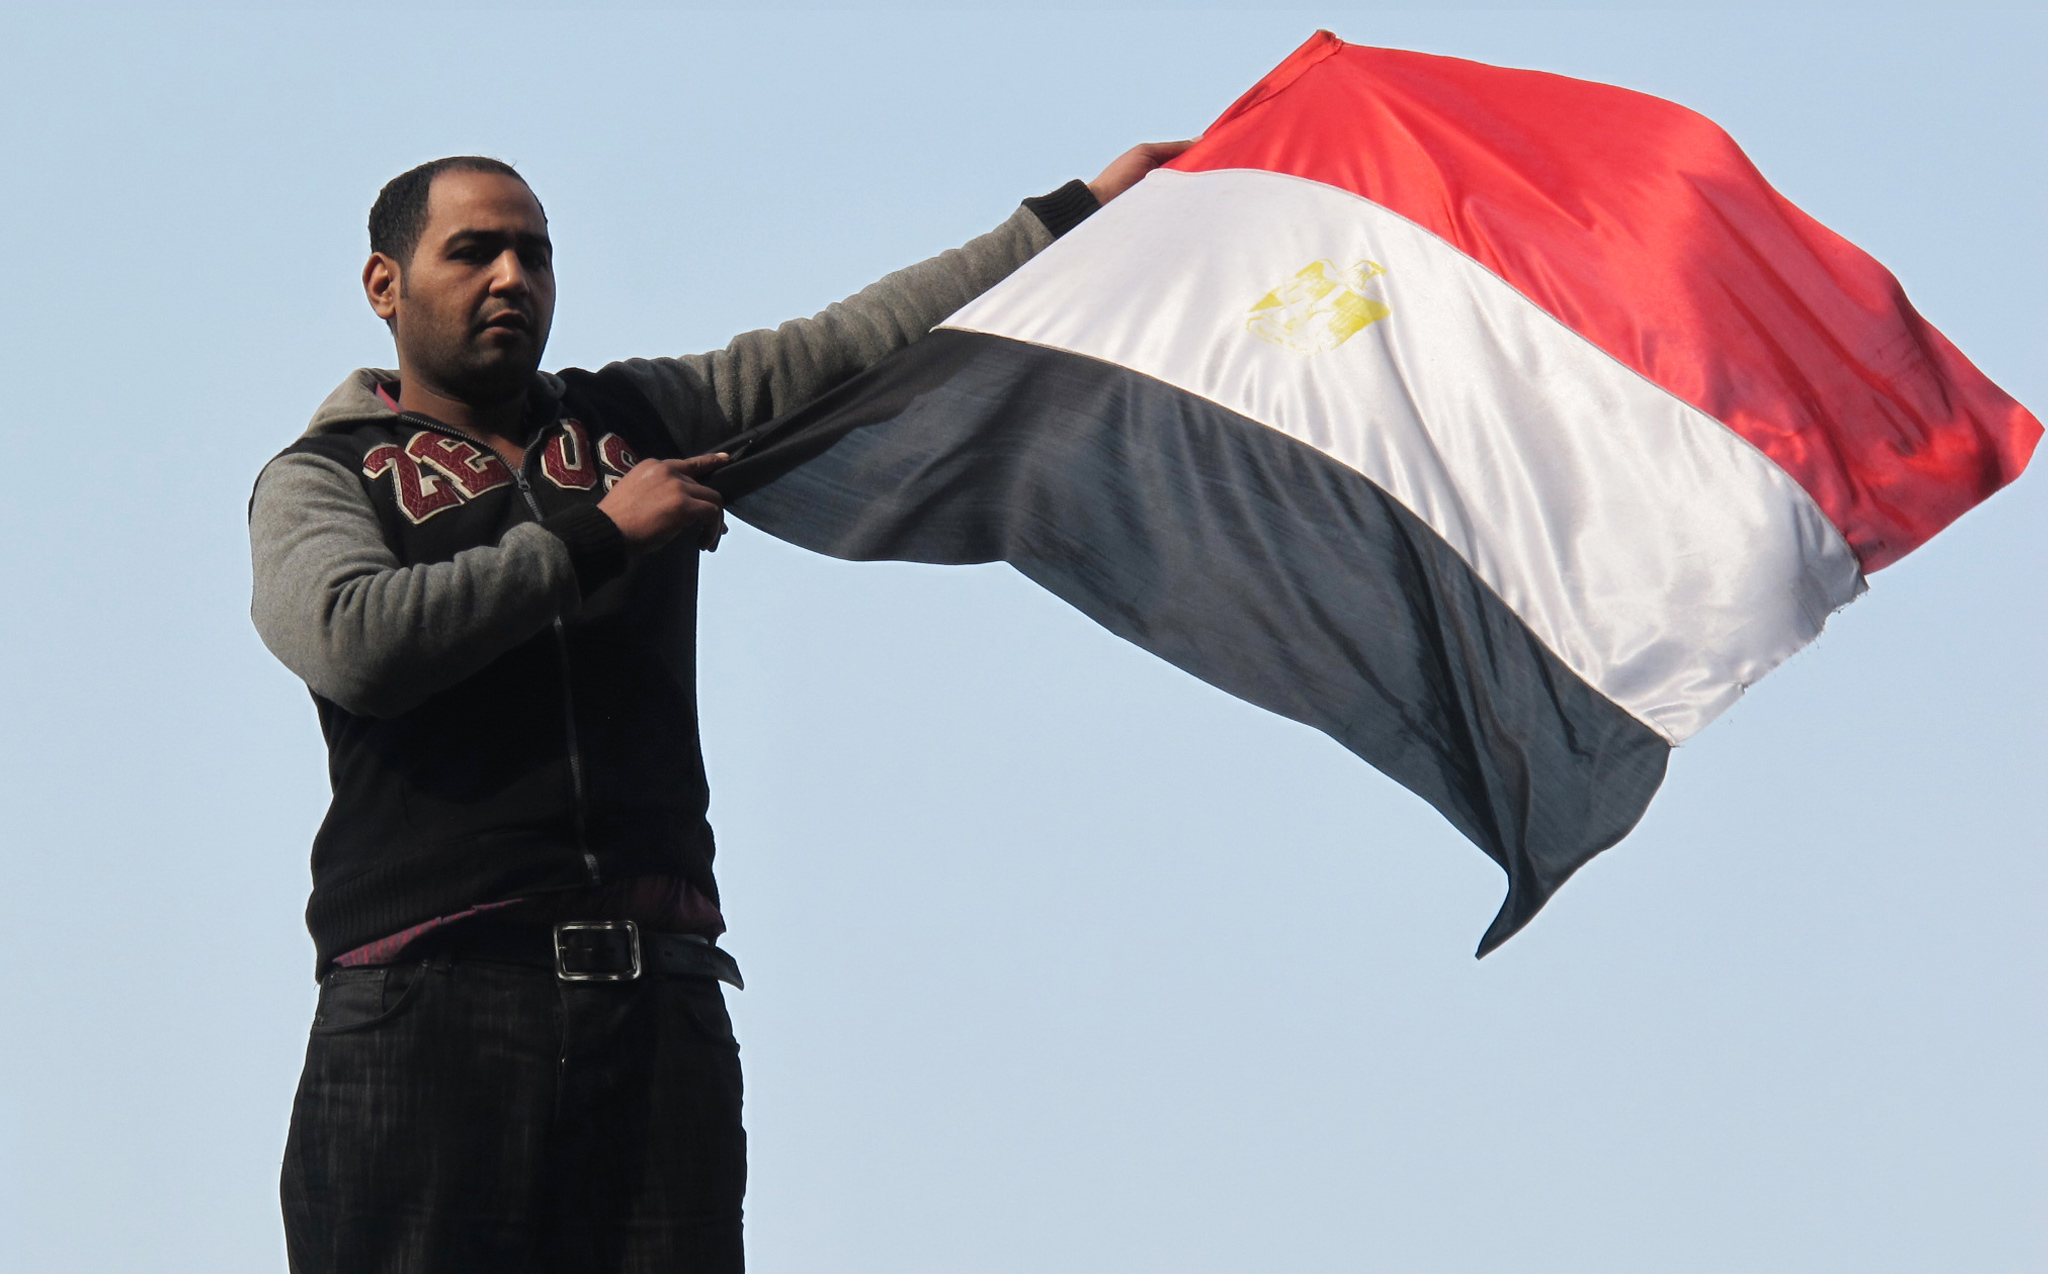  La révolution est sauvée malgré un bilan total officiel de 850 morts et de milliers de blessés. Le président Hosni Moubarak démissionnera quelques jours plus tard, le 11 février 2011. <br>La place Tahrir jubile, aux cris des «va-t-en».
(Crédit photo : Marc Daou)
